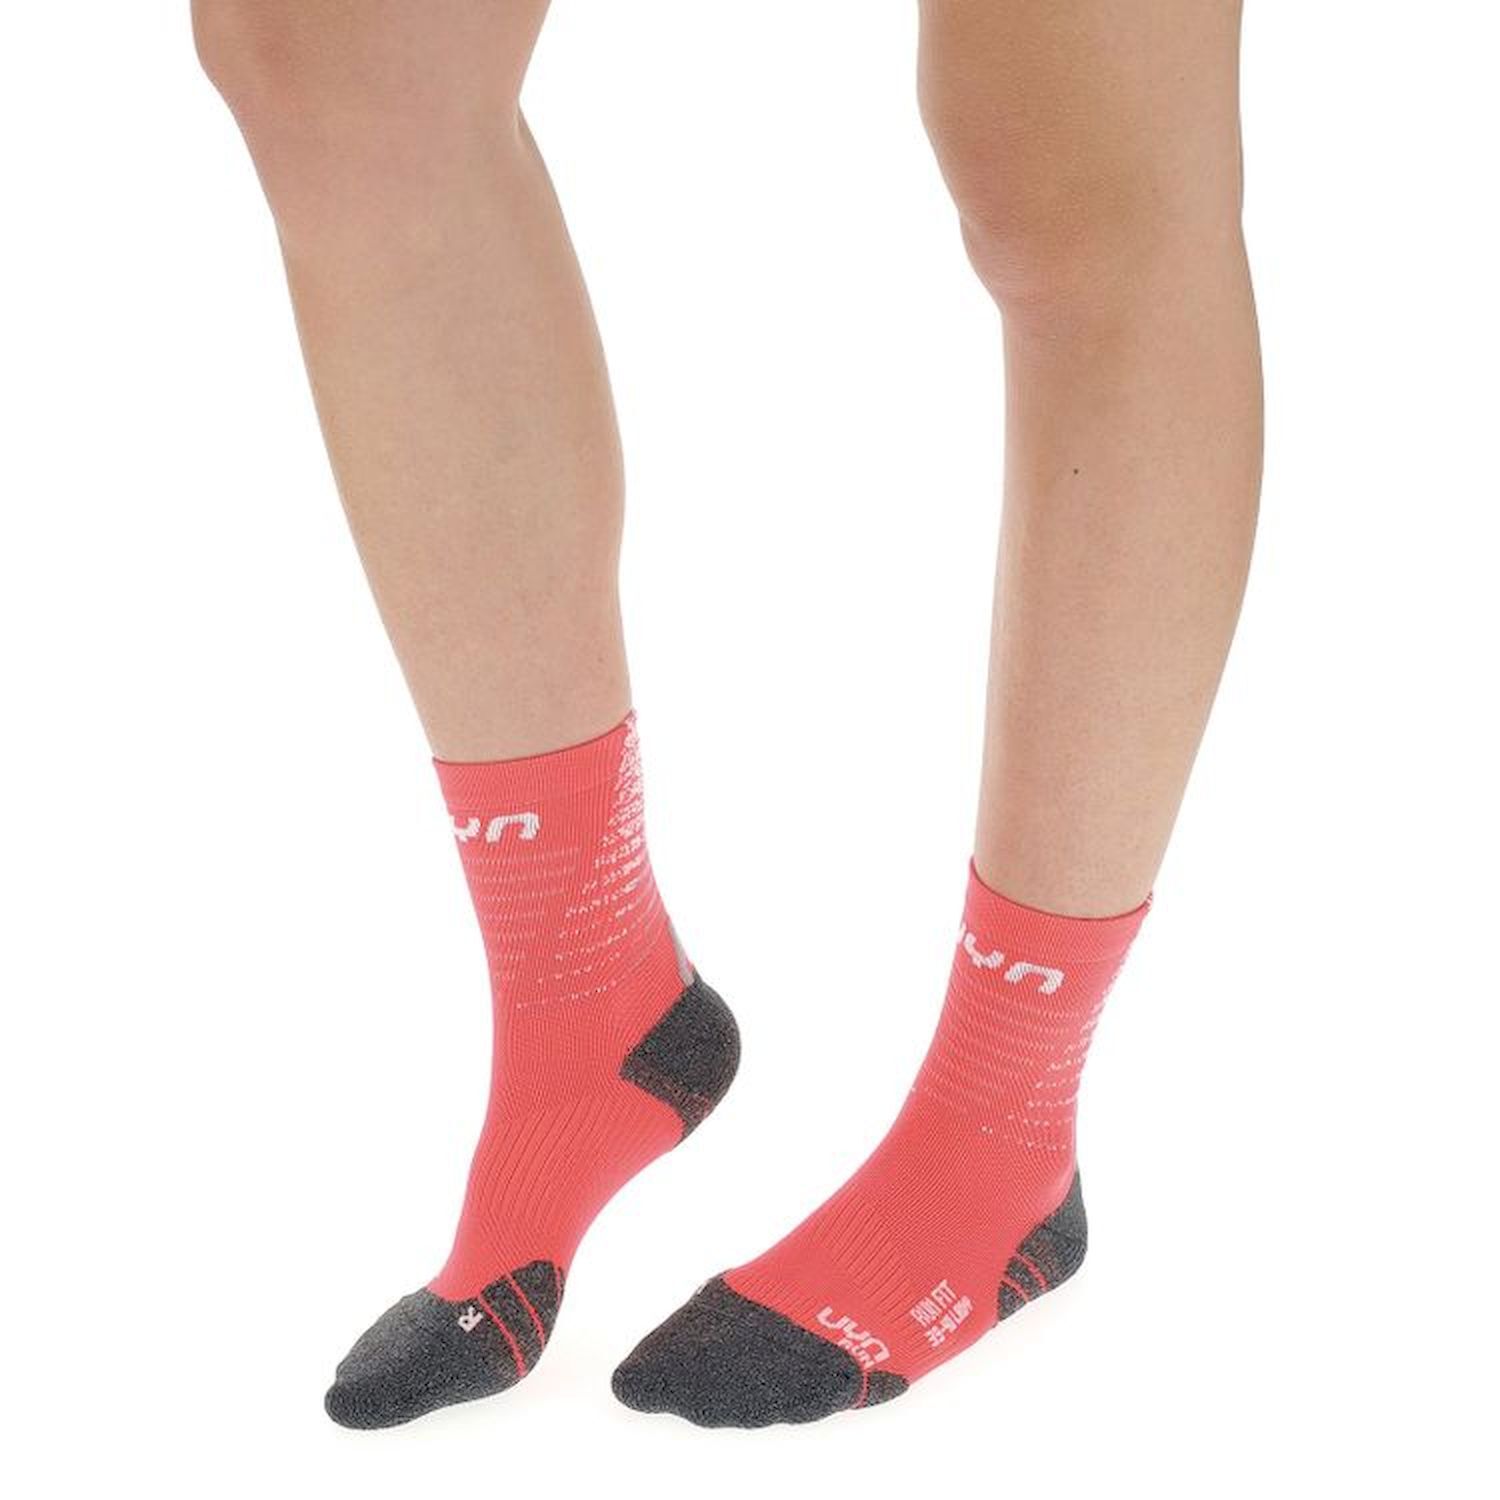 Uyn Run Fit Socks - Calze running - Donna